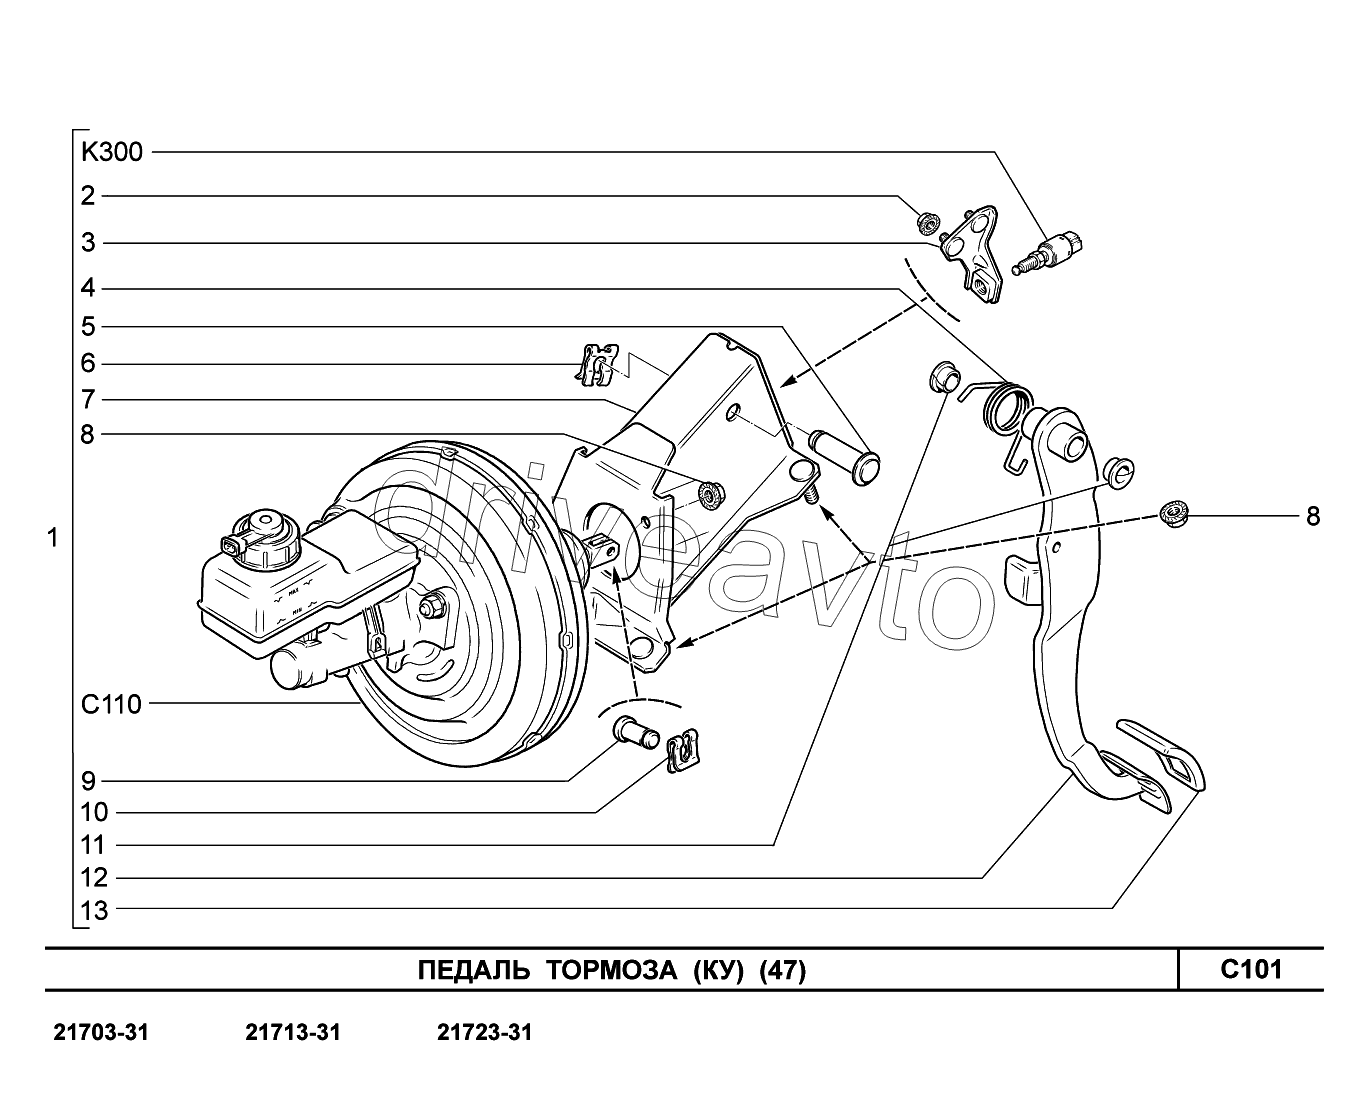 C101. Педаль тормоза